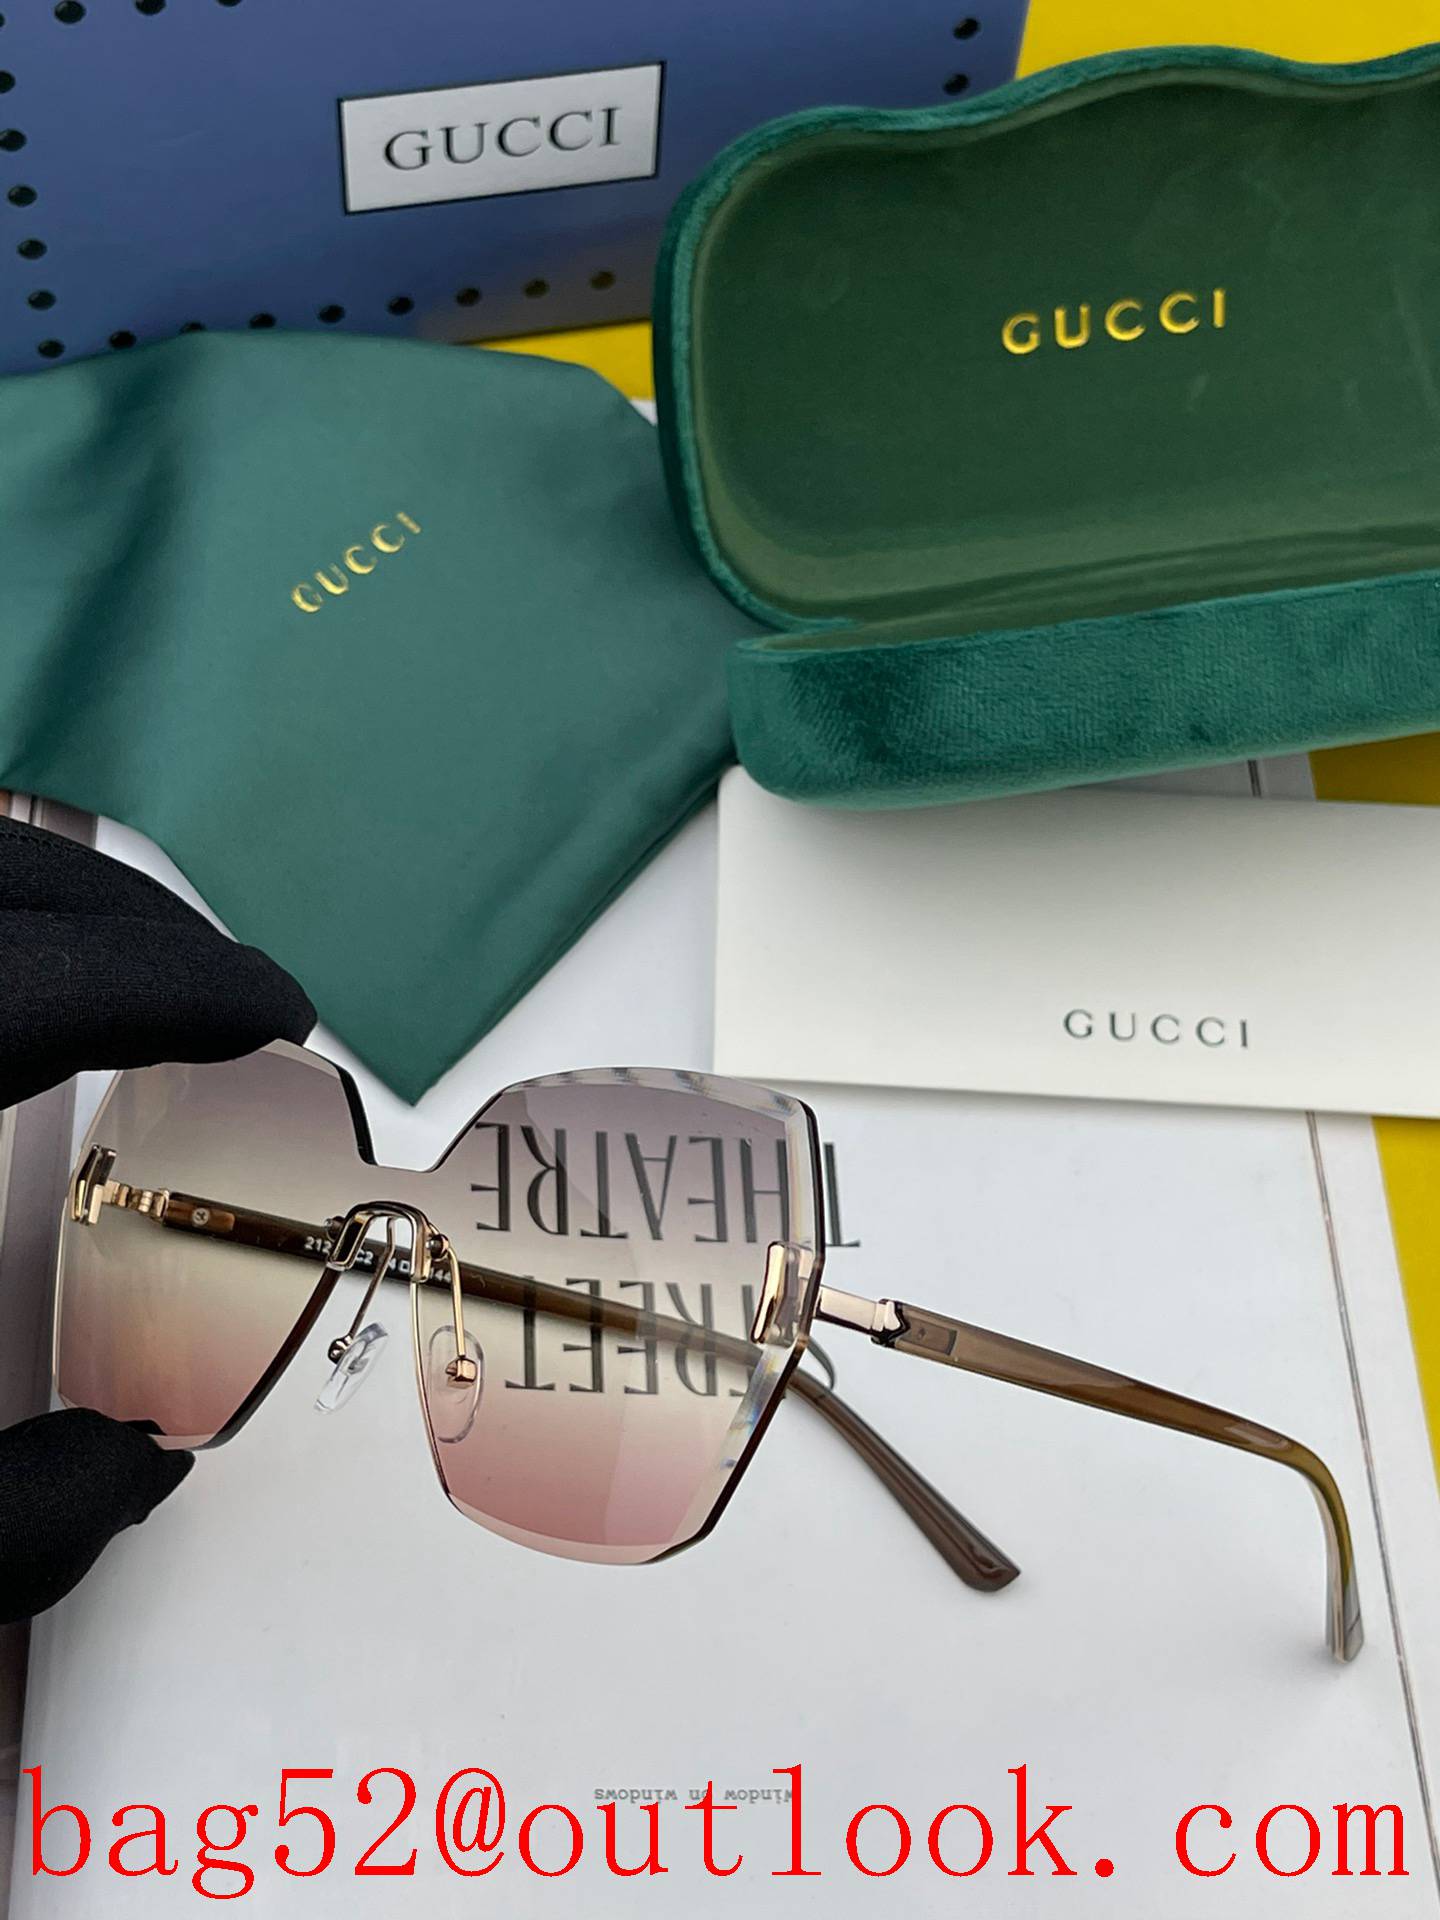 GUCCI's new one-piece nylon polarized sunglasses